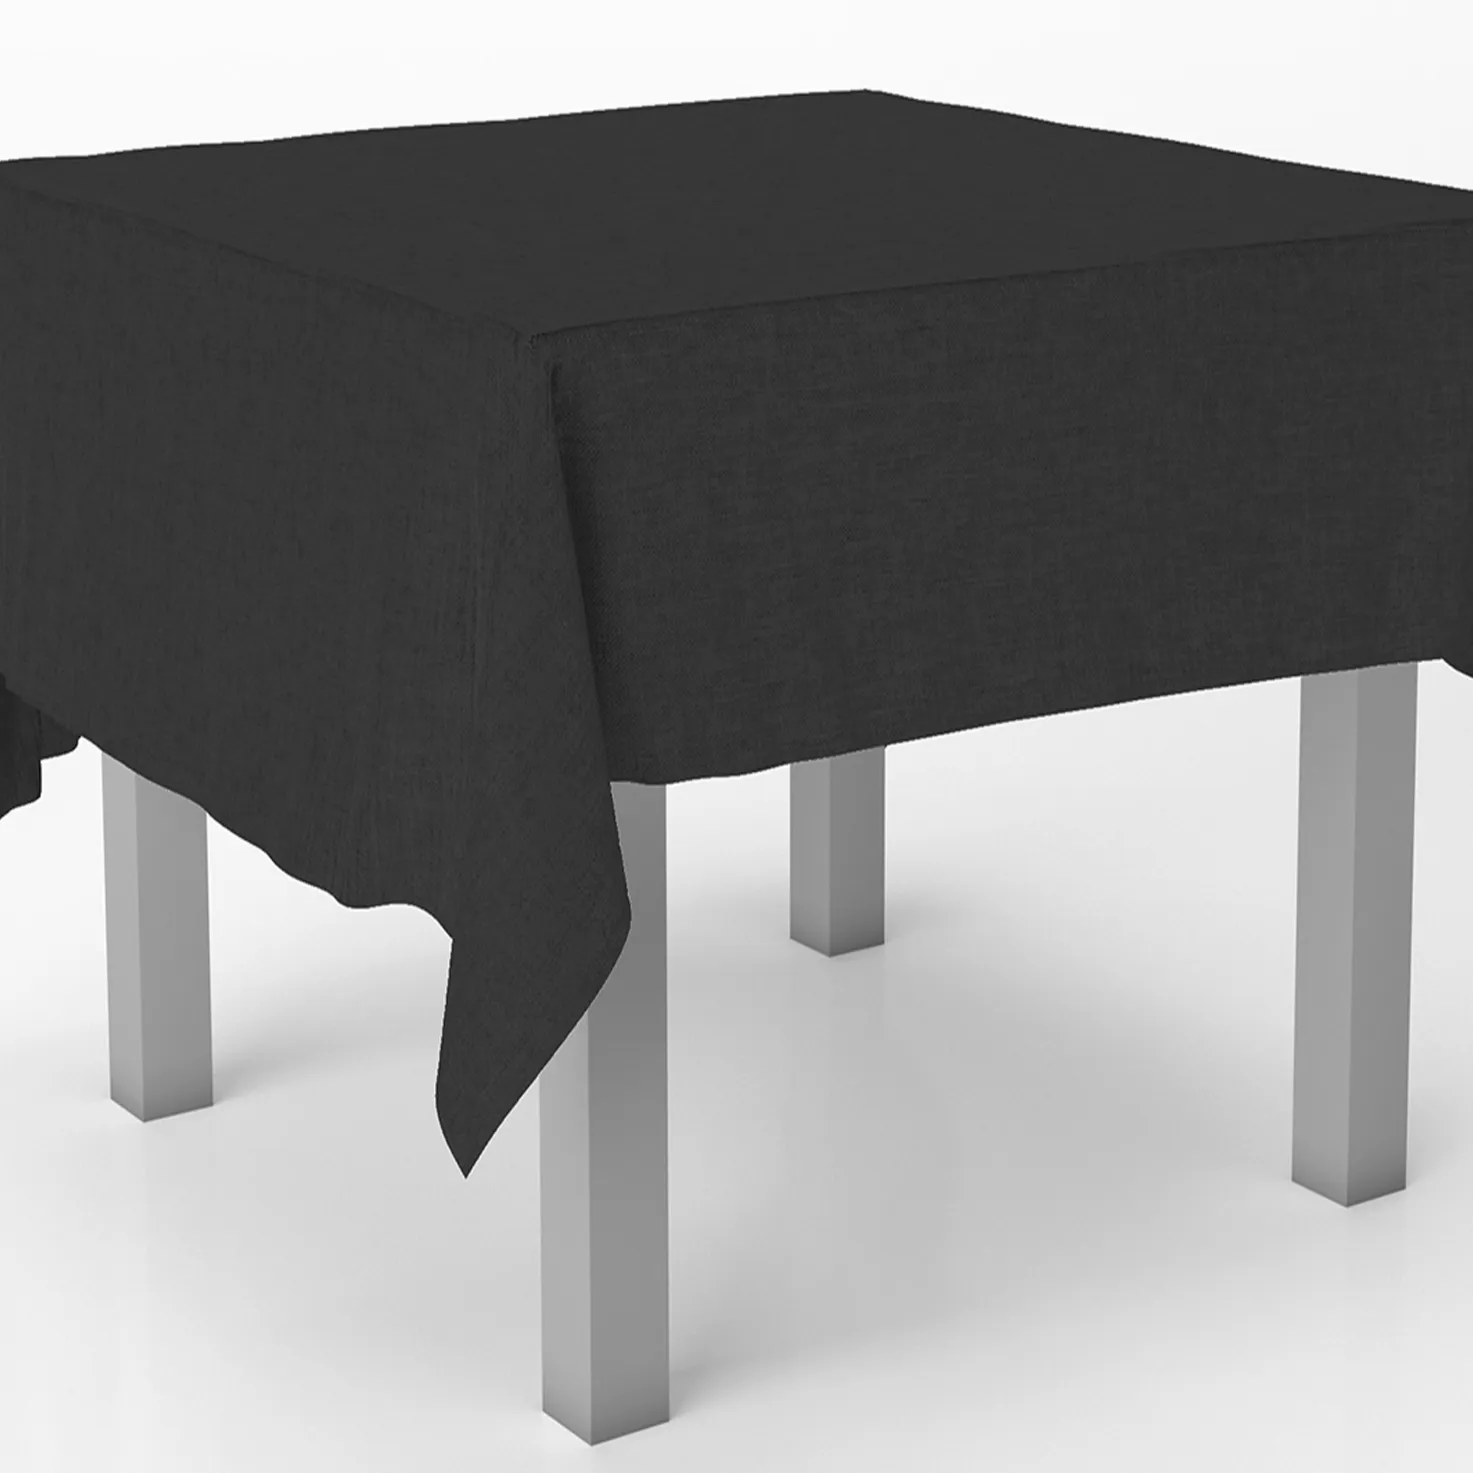 काले मेज़पोश पानी प्रतिरोधी डाइनिंग टेबल कपड़ा धो सकते हैं टेबल कवर के लिए घर रेस्तरां शादी के रिसेप्शन भोज पार्टी